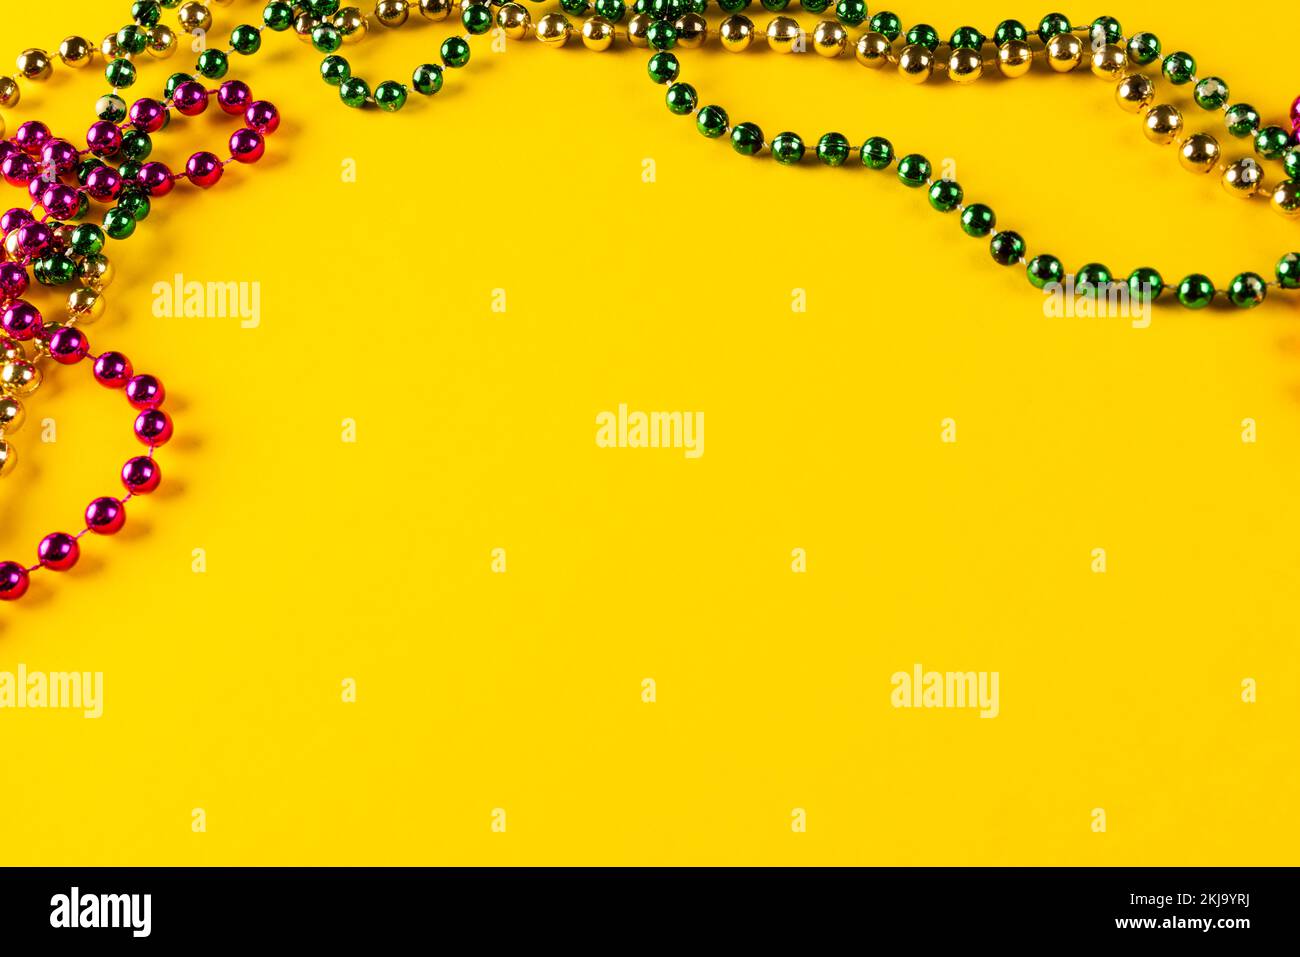 Composition de perles mardi gras colorées sur fond jaune avec espace de copie Banque D'Images